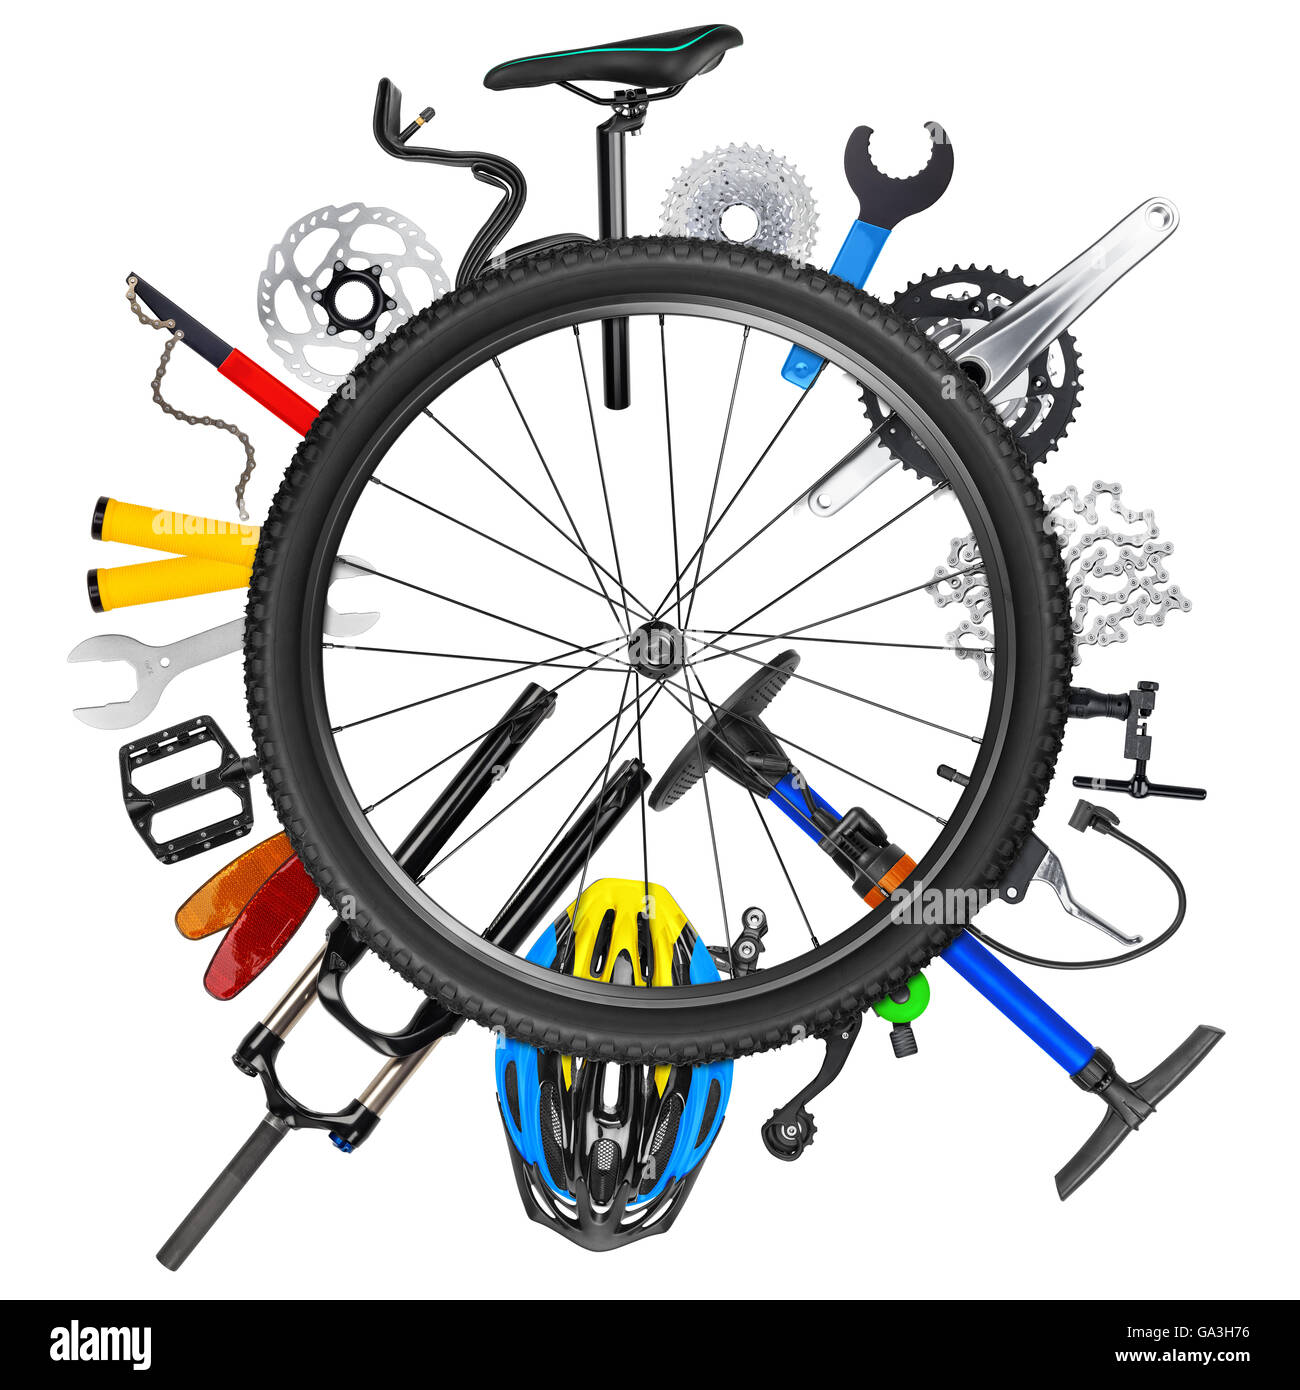 La partie vélo Vélo collage isolés des pneus des roues concept sport pneu jante arrière-plan blanc composant matériel Fournitures accessoires Banque D'Images